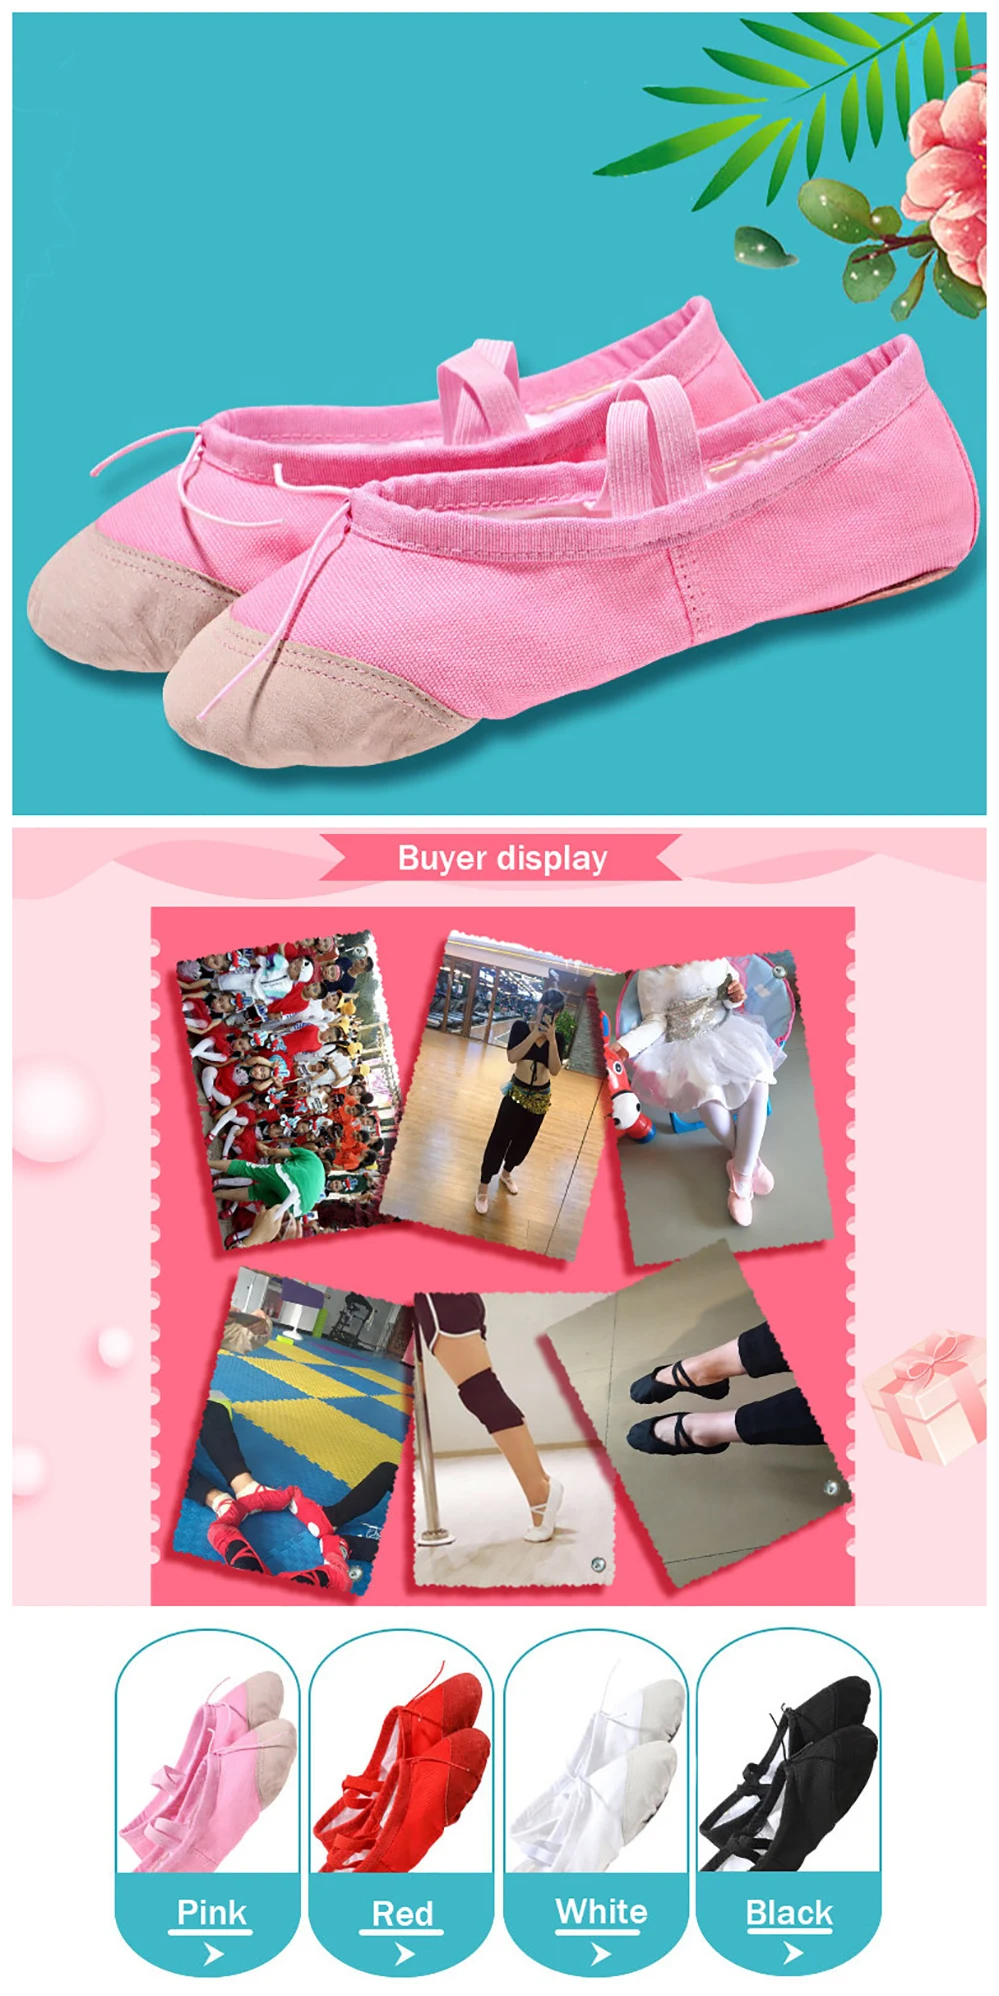 USHINE кожаная домашняя обувь для тренировок, йоги, тренировок, тапочек, для спортзала, для детей, парусиновая балетная танцевальная обувь для девочек, женщин, детей